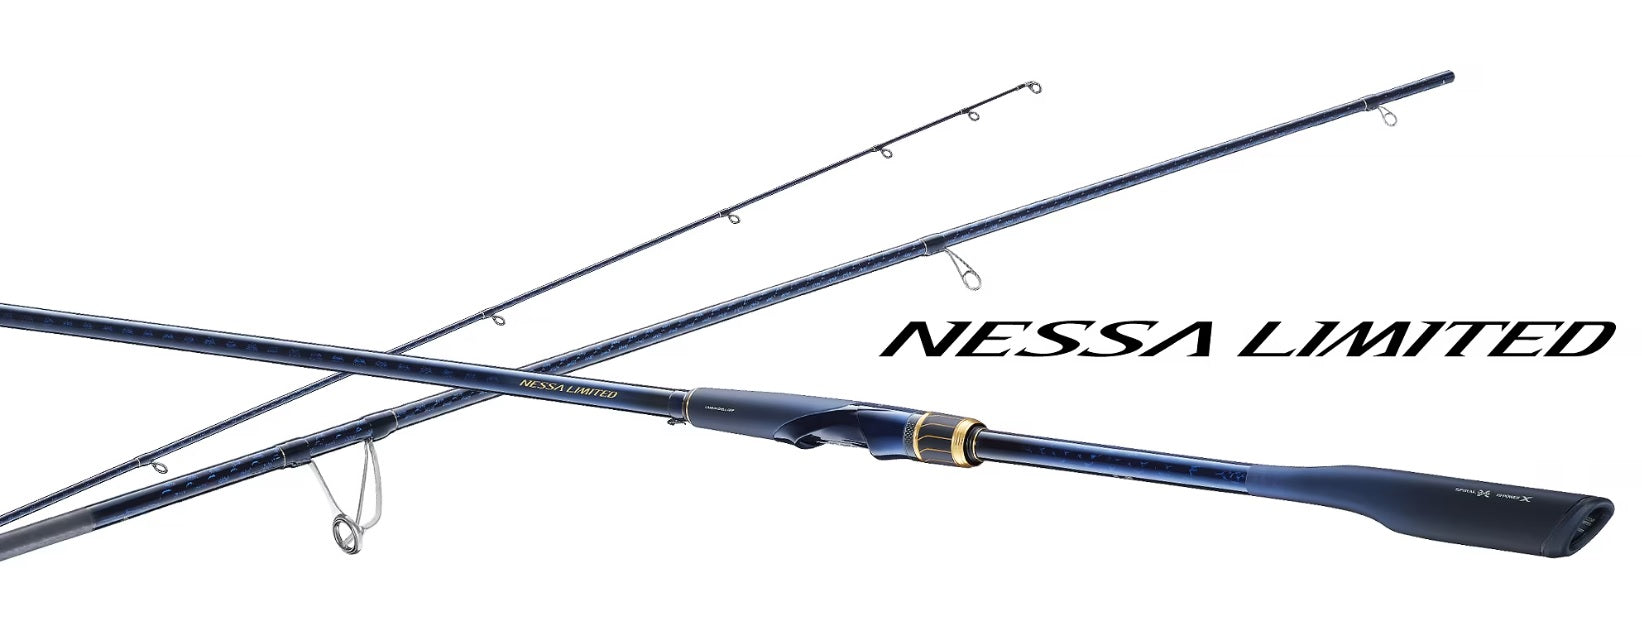 Shimano 23 Nessa Limited – Isofishinglifestyle